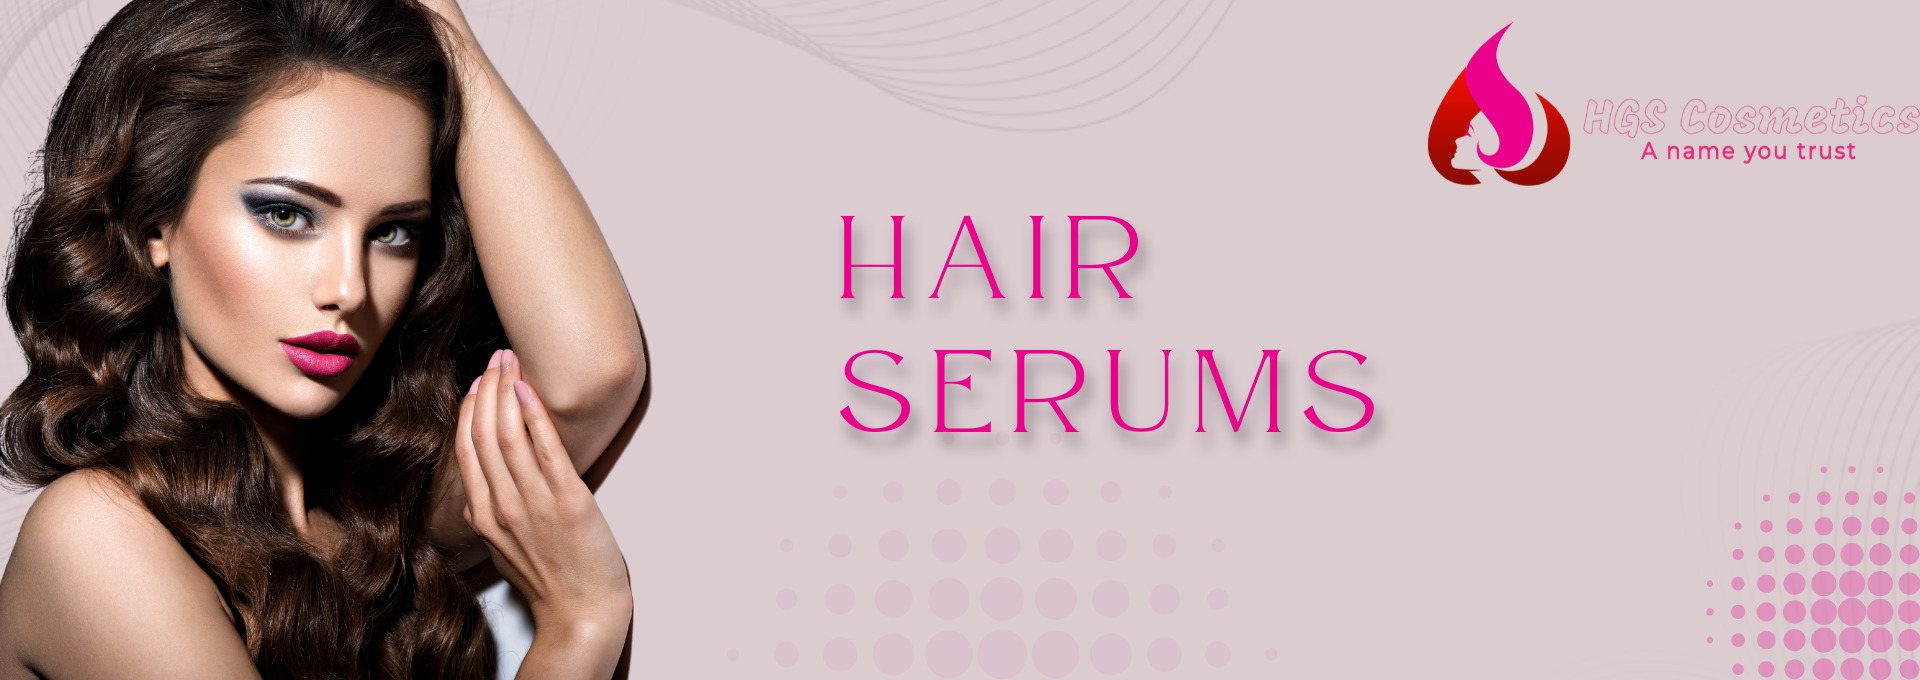 Buy Best Hair Serum Online In Pakistan | HGS Cosmetics